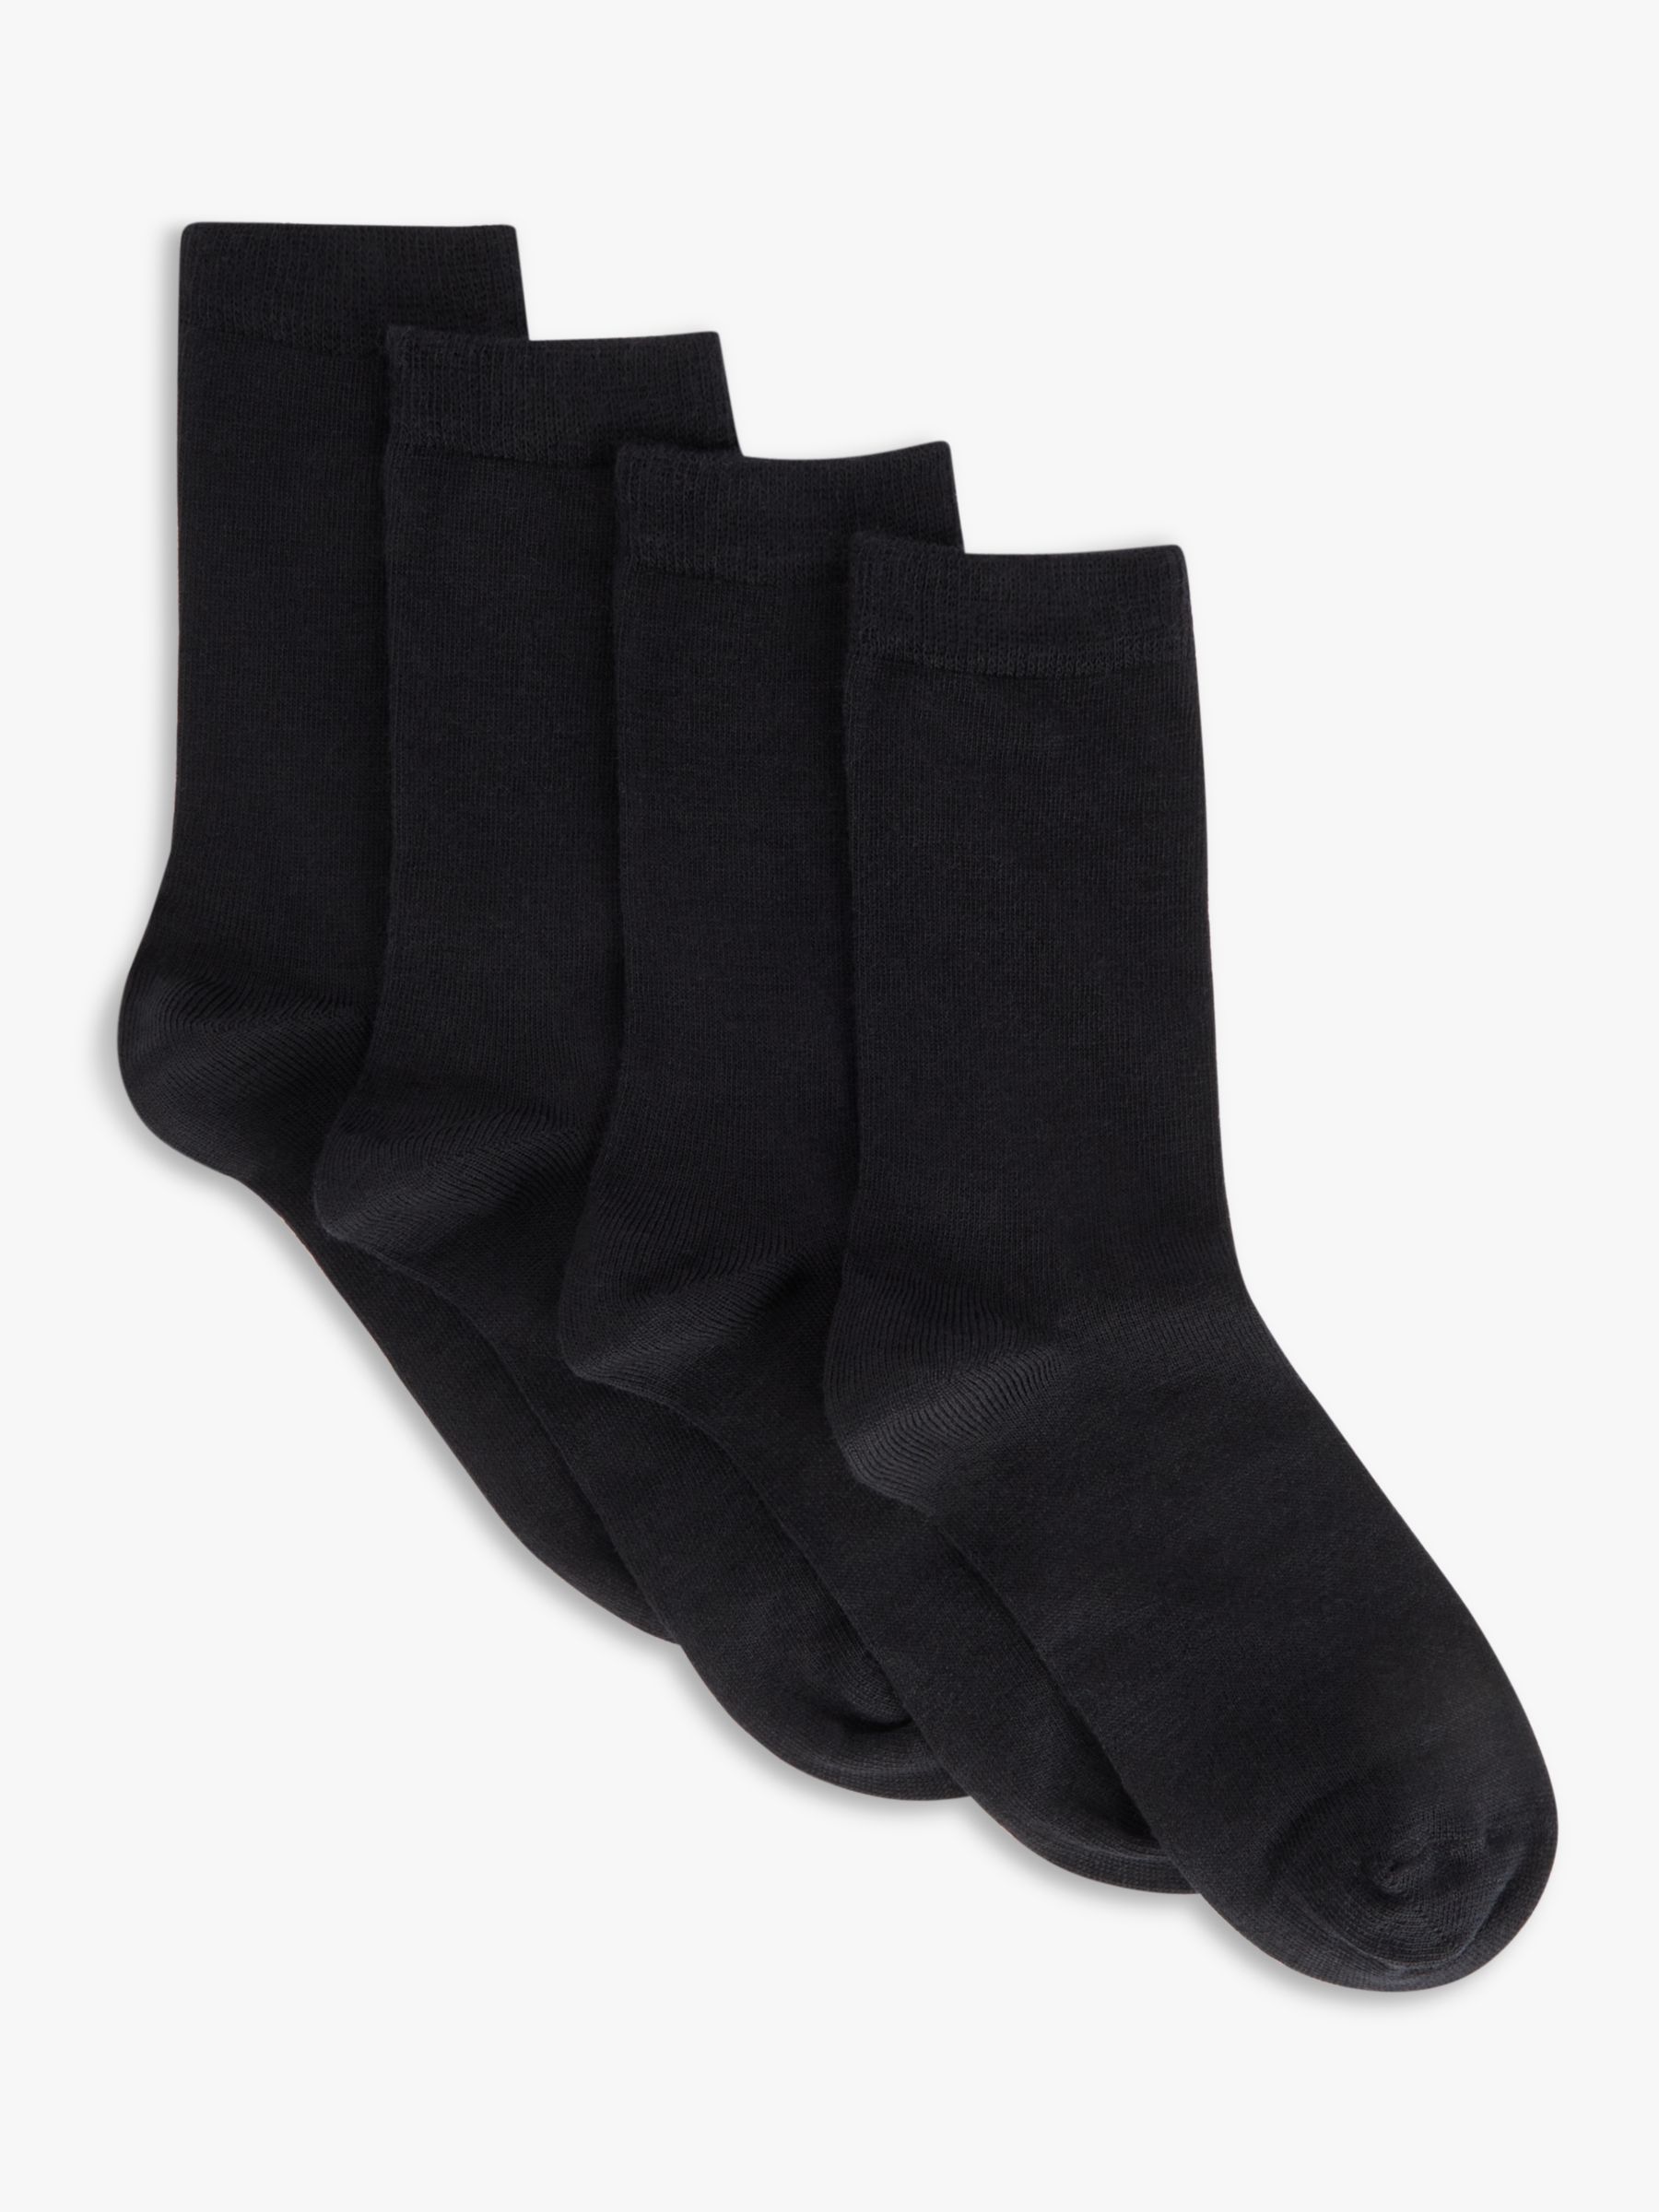 John Lewis Merino Wool Mix Ankle Socks, Pack of 2, Black at John Lewis ...